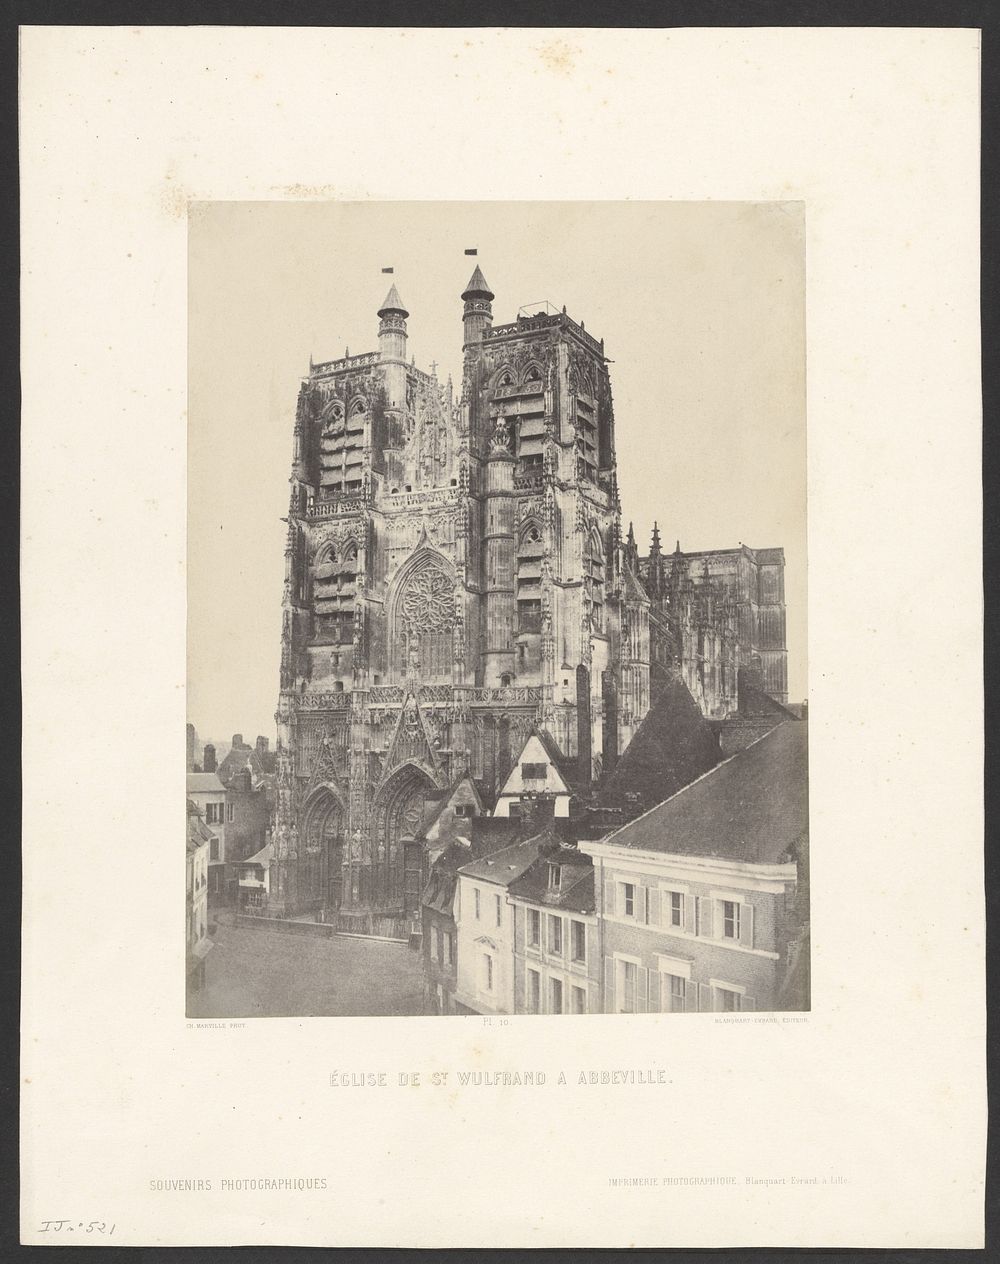 Église de St. Wulfrand à Abbeville." by Charles Marville and Louis Désiré Blanquart Evrard